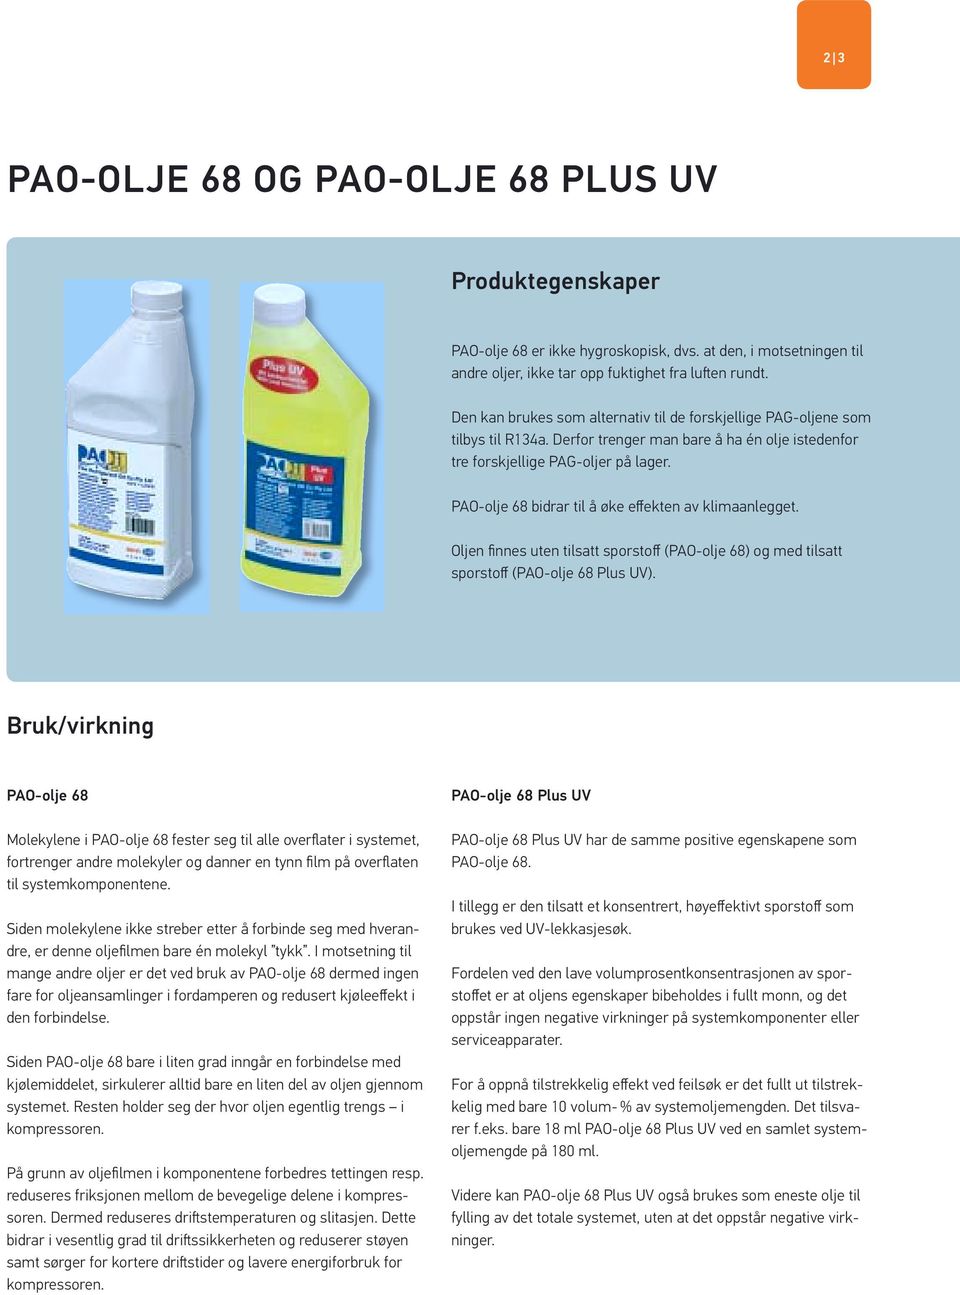 PAO-olje 68 bidrar til å øke effekten av klimaanlegget. Oljen fi nnes uten tilsatt sporstoff (PAO-olje 68) og med tilsatt sporstoff (PAO-olje 68 Plus UV).